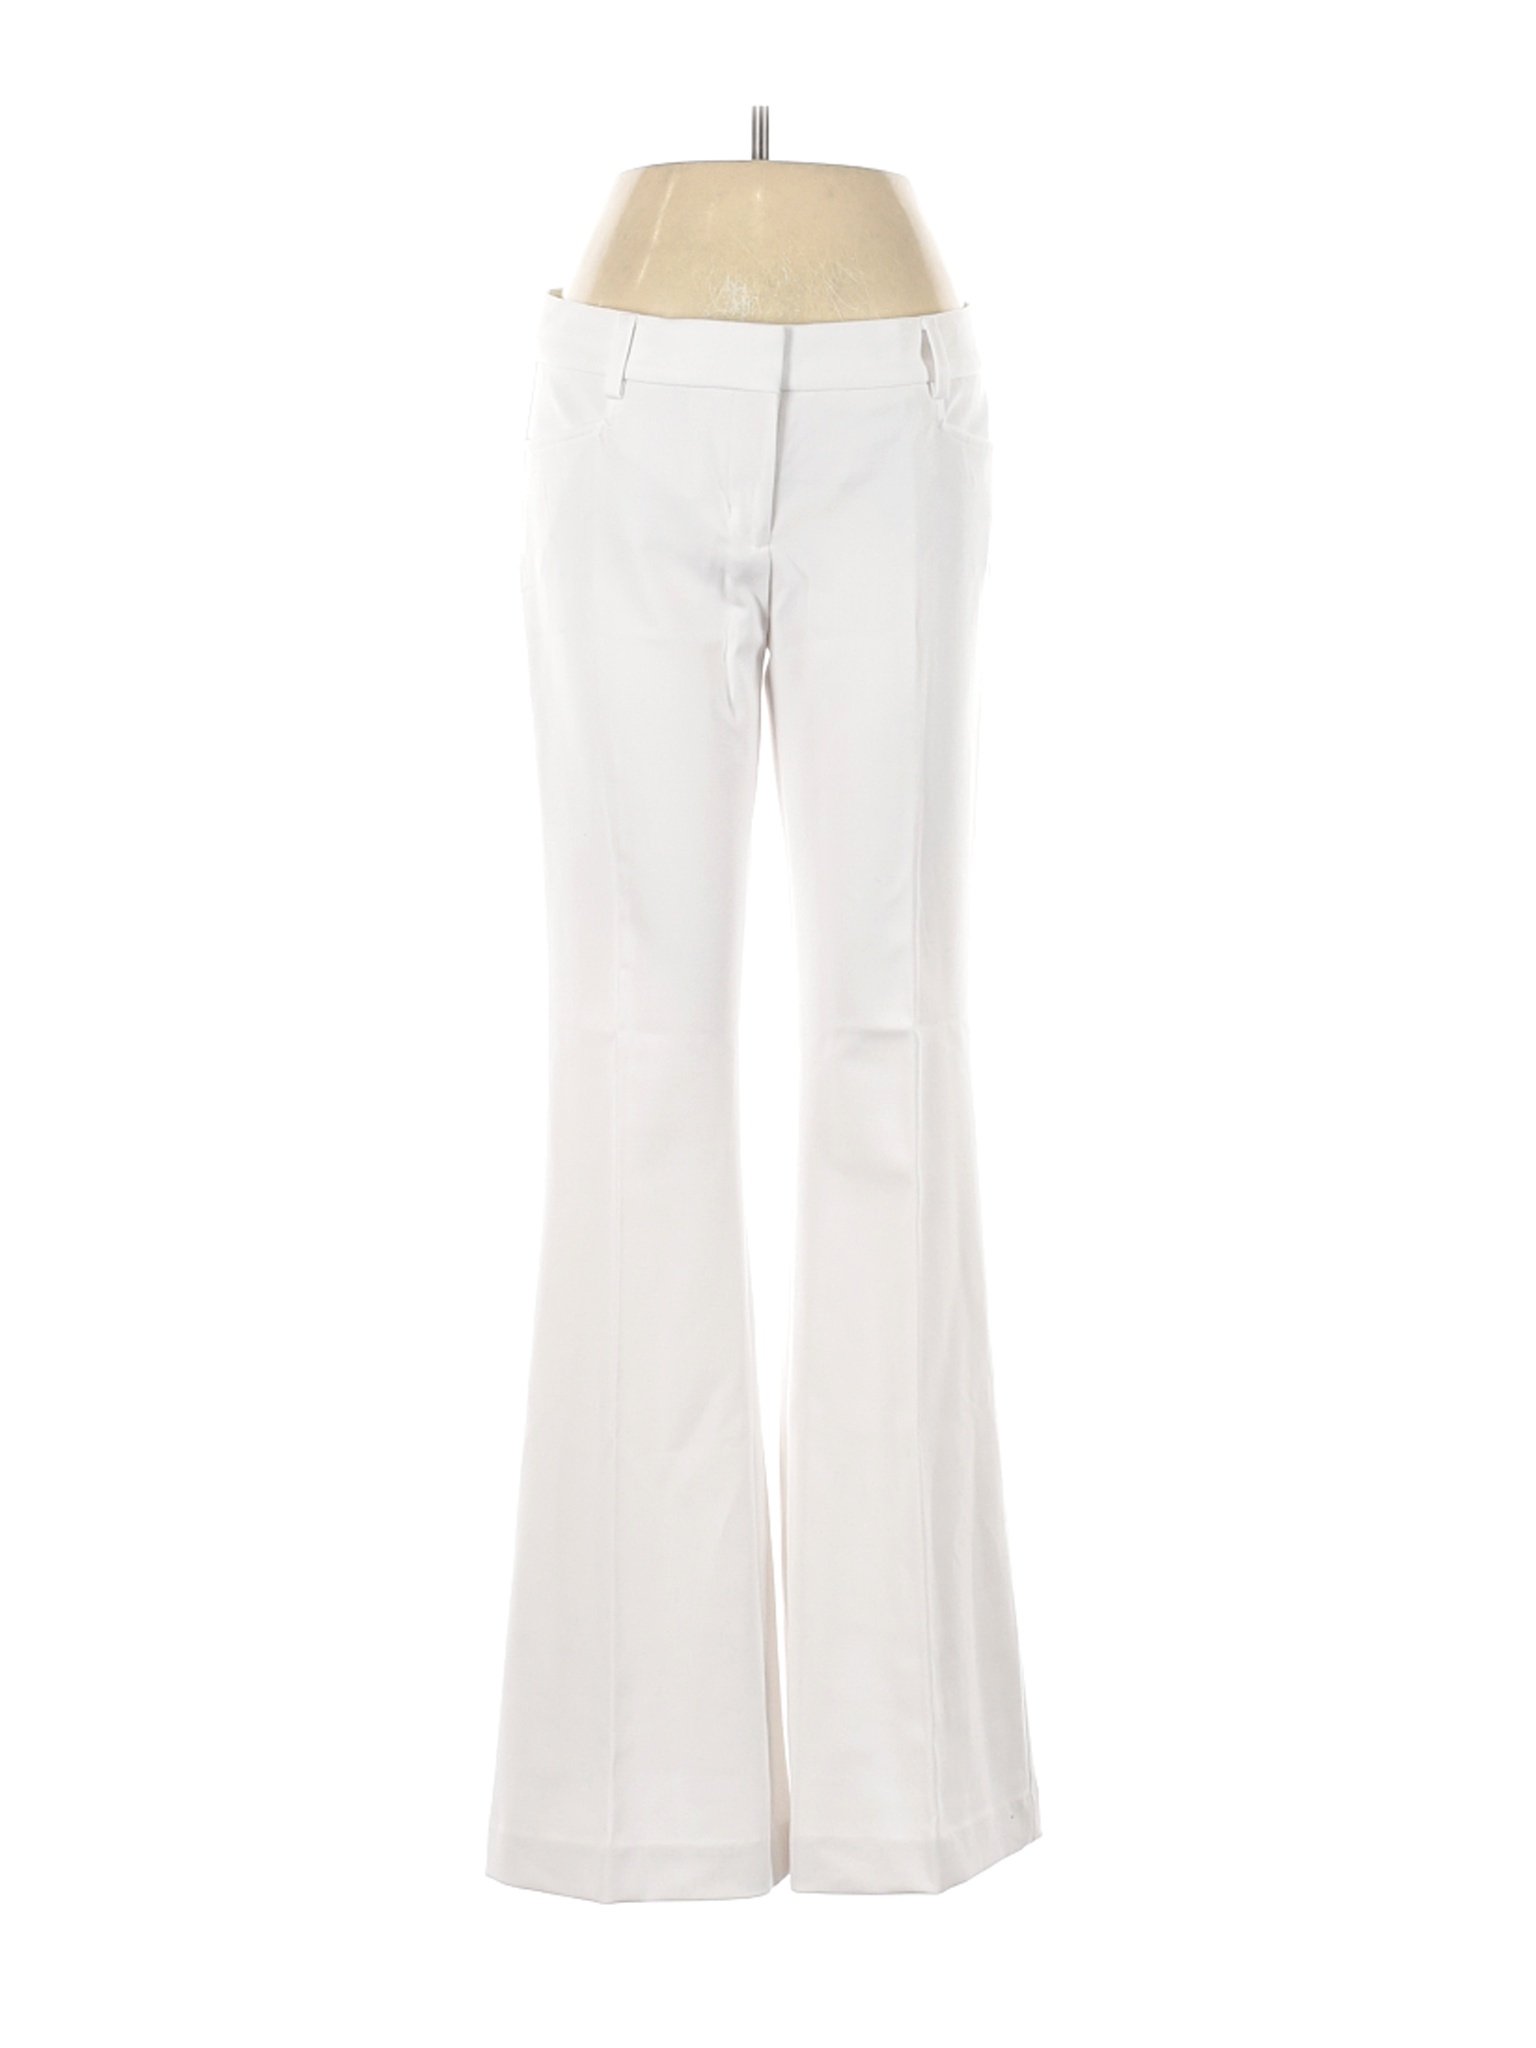 NWT Express Women White Dress Pants 4 | eBay